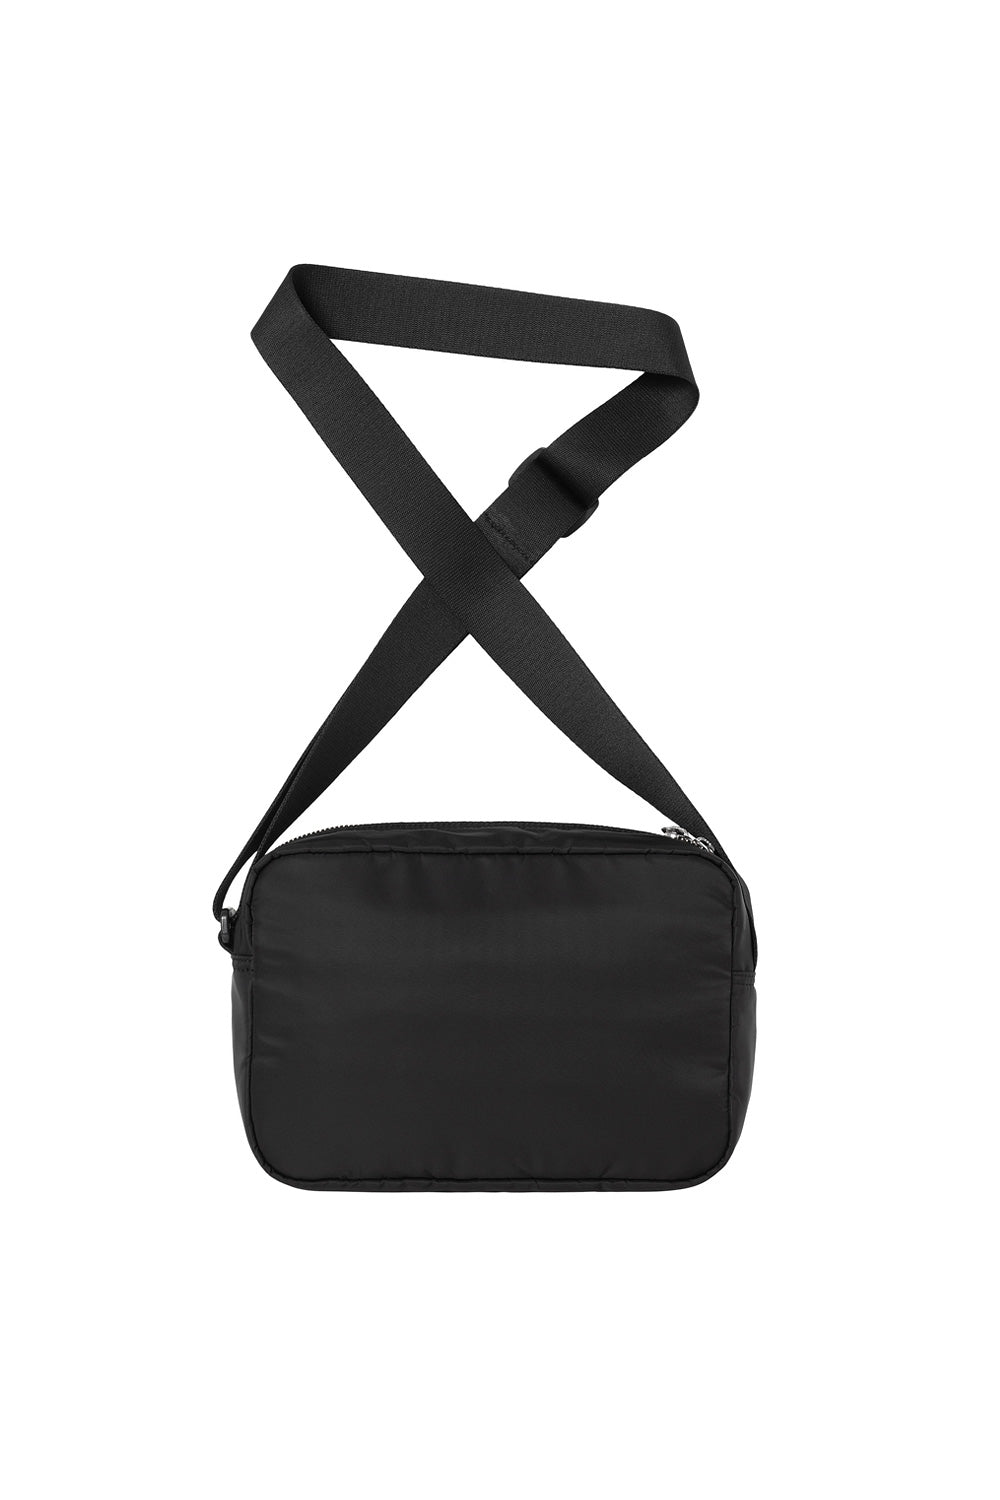 Carhartt WIP Otley Shoulder Bag Black - BONKERS